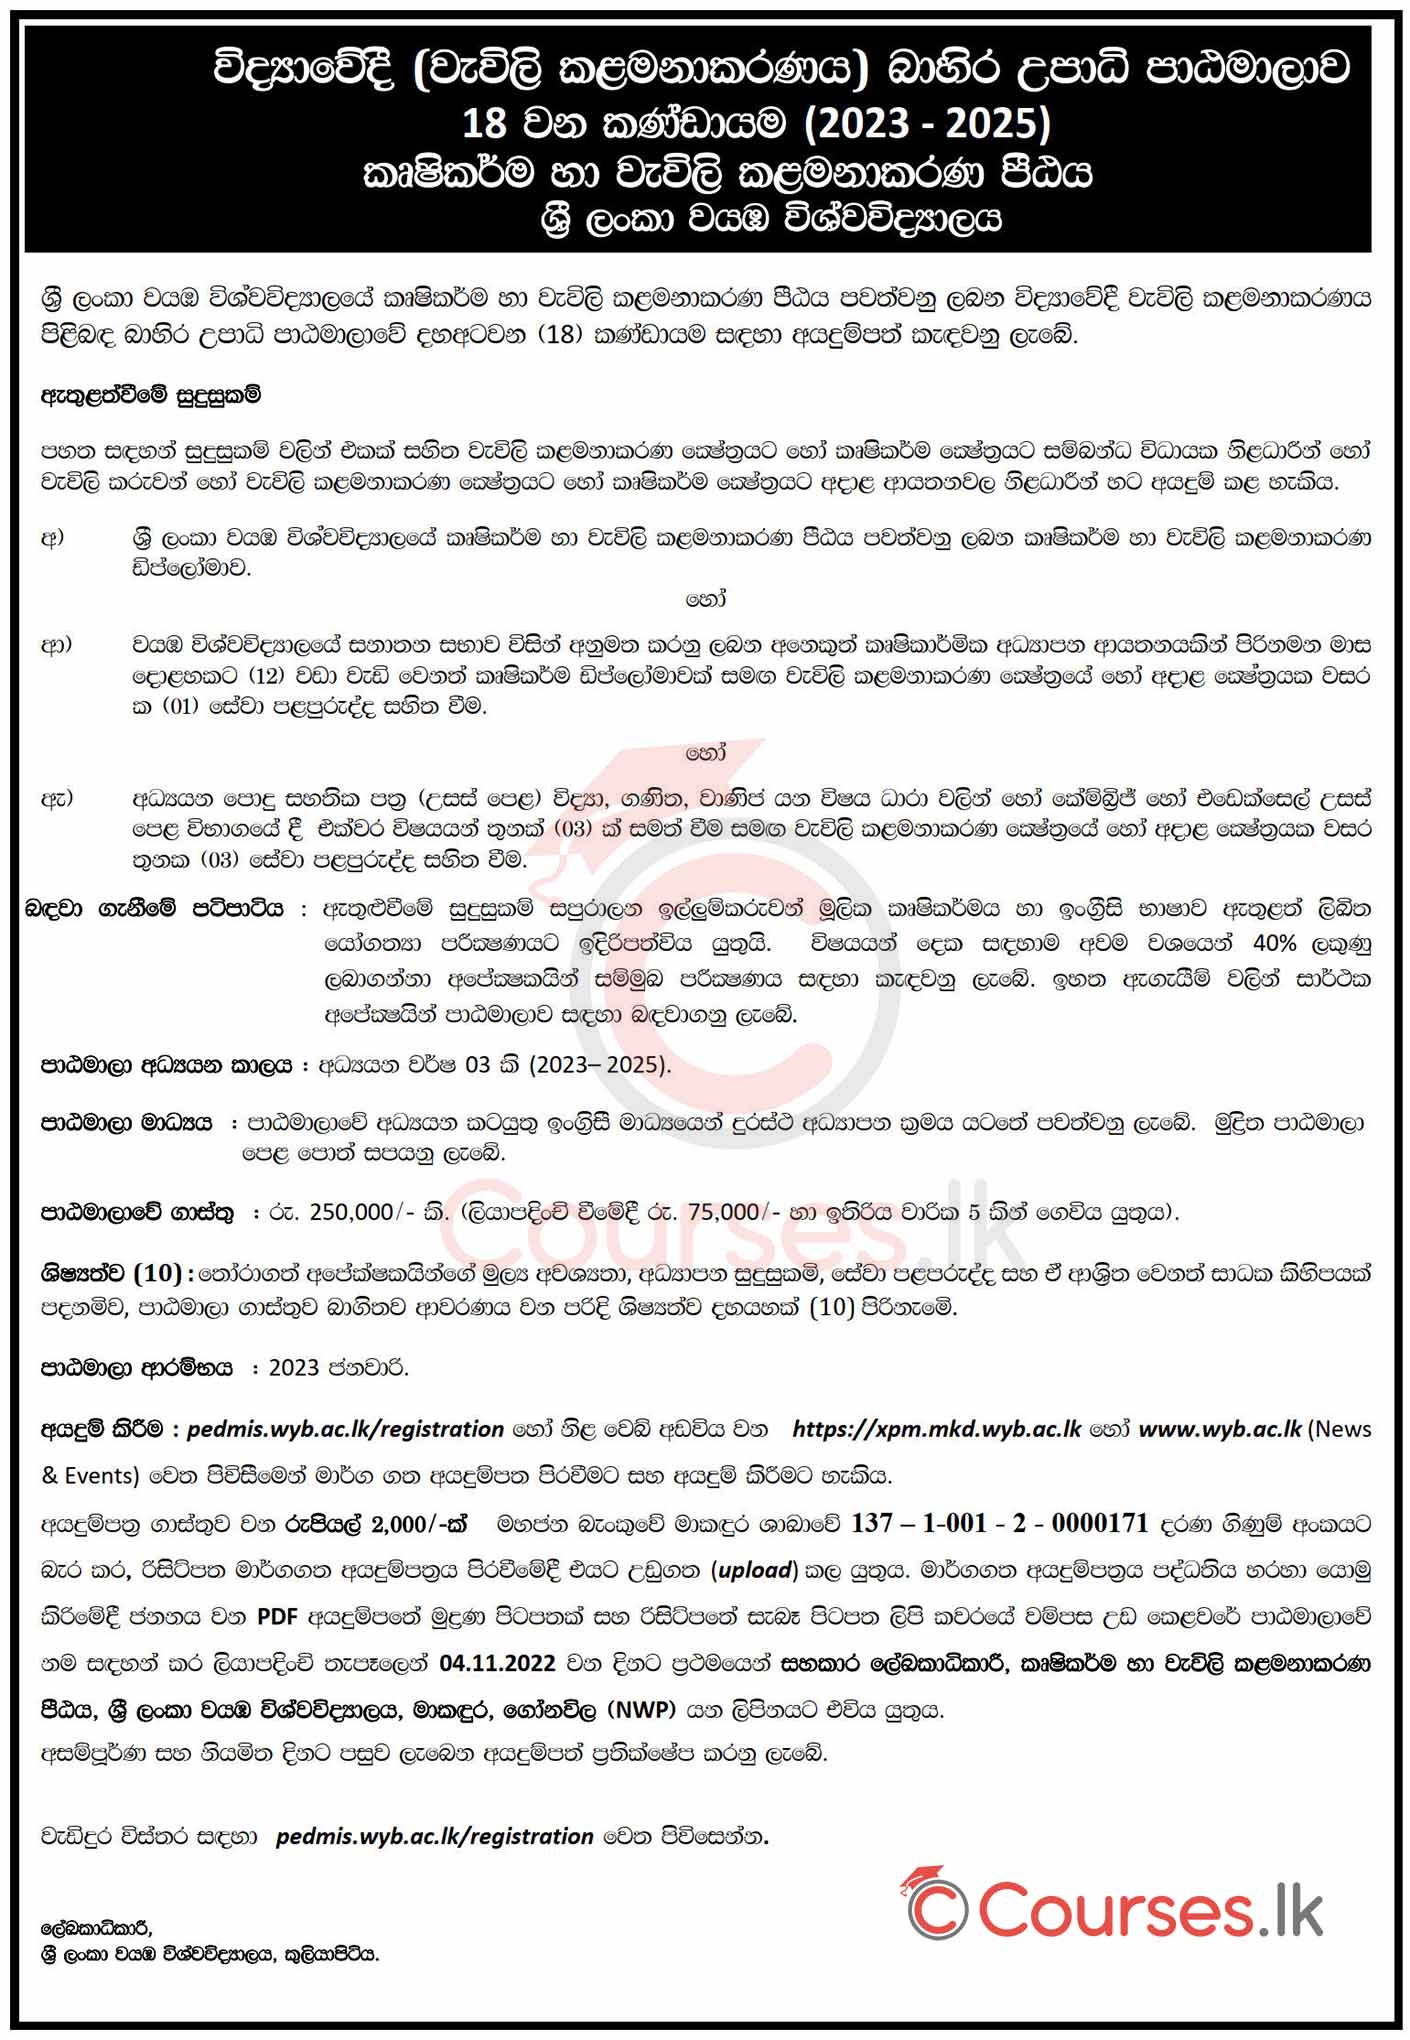 BSc in Plantation Management (External) Degree Programme 2022 - Wayamba University of Sri Lanka (WUSL)